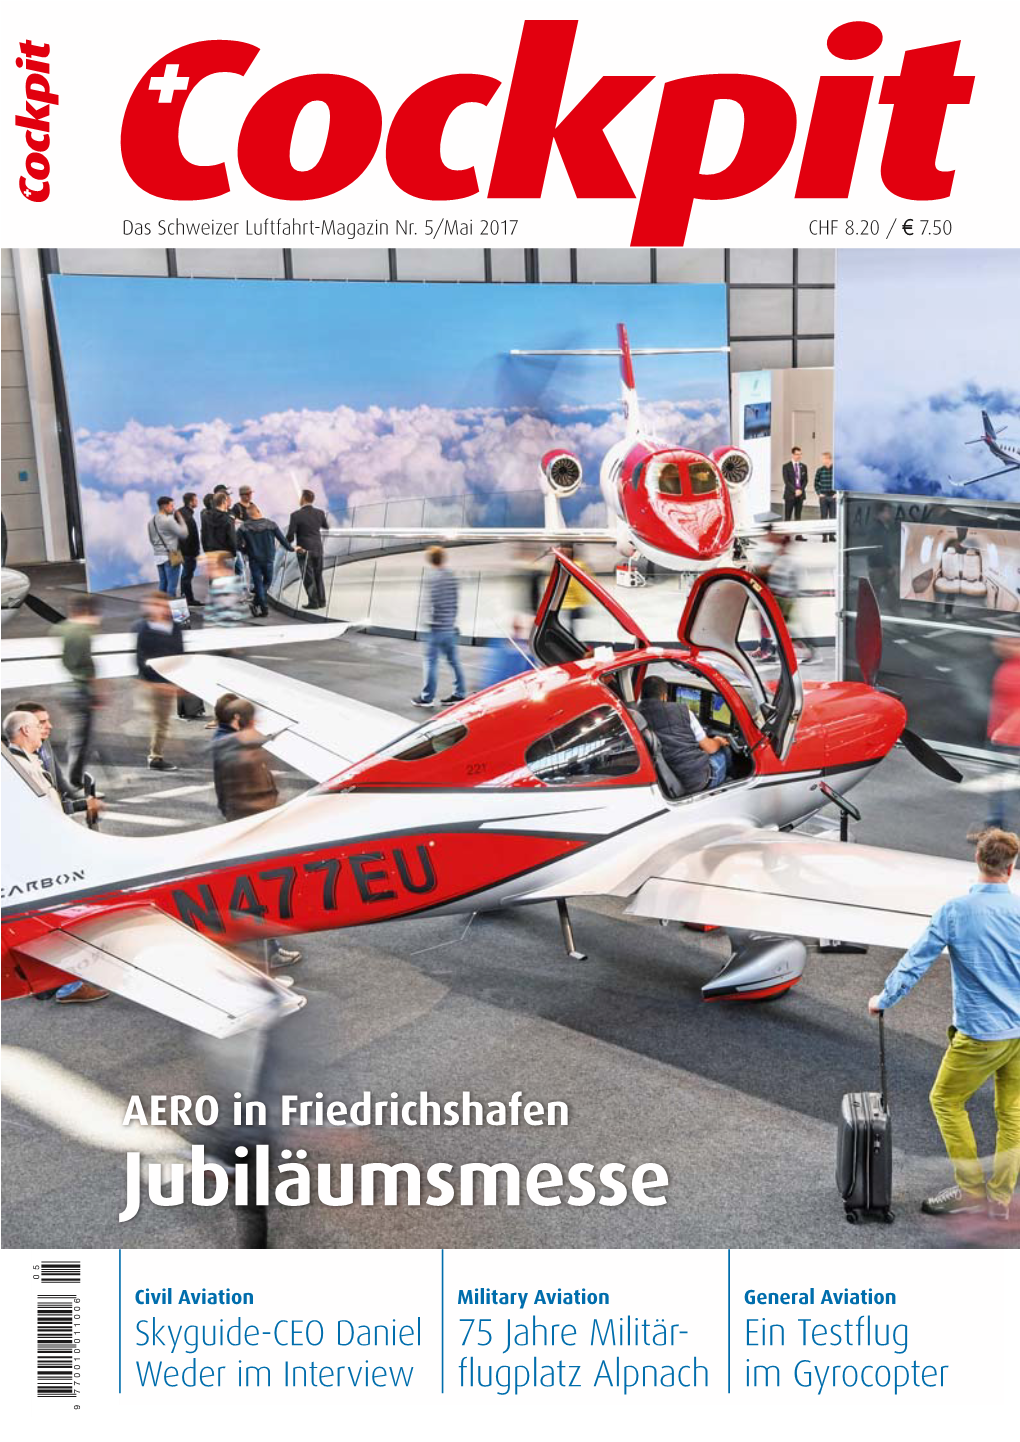 Jubiläumsmesse Friedrichshafen in AERO CHF8.20 / Das Schweizer Luftfahrt-Magazin Nr